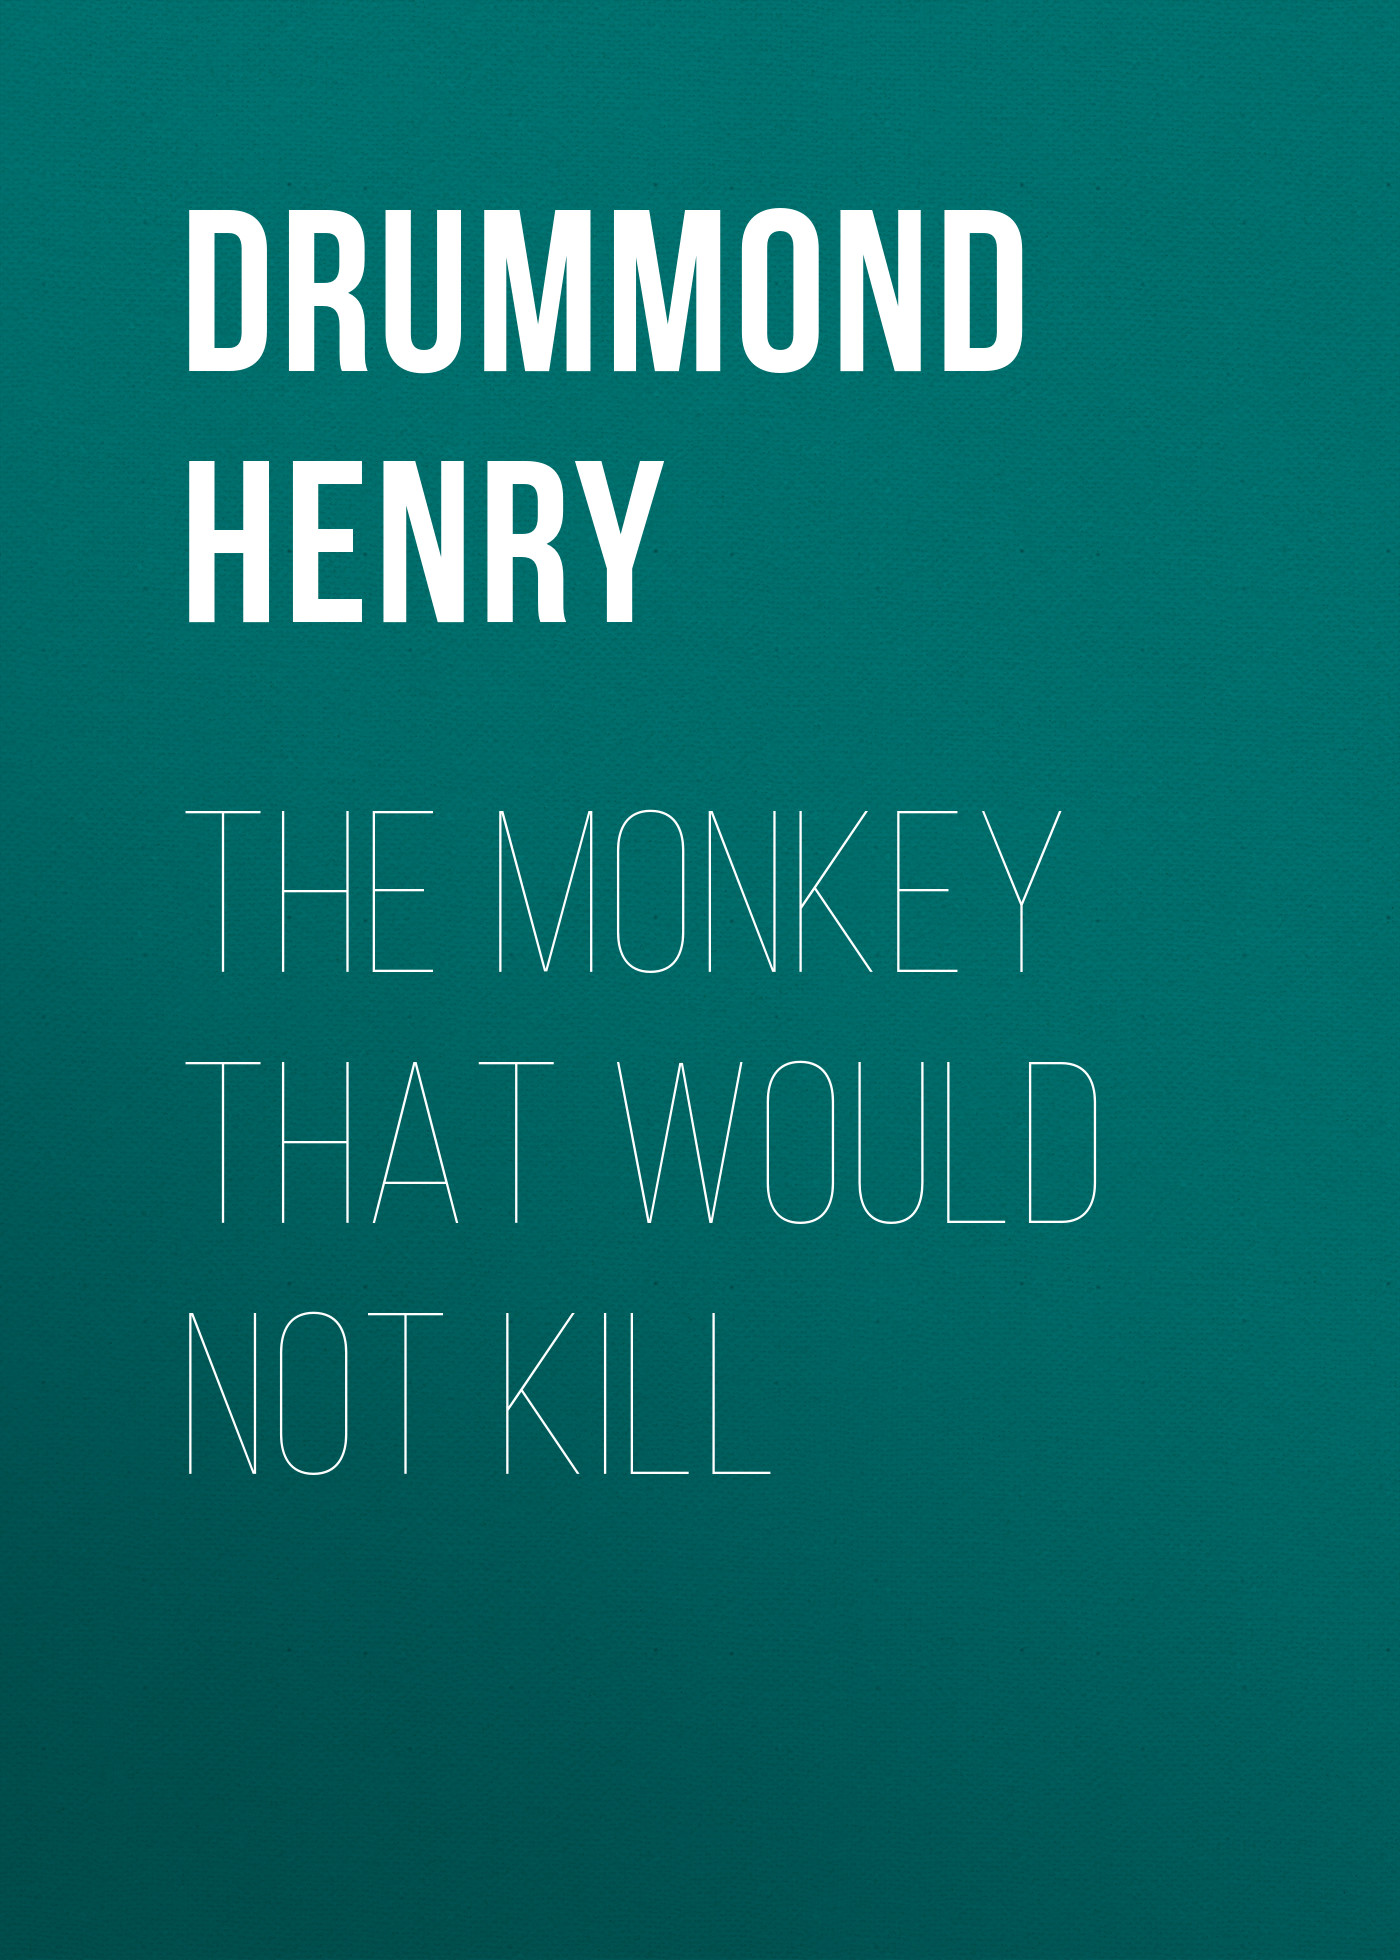 Книга The Monkey That Would Not Kill из серии , созданная Henry Drummond, может относится к жанру Природа и животные, Зарубежная старинная литература, Зарубежная классика. Стоимость книги The Monkey That Would Not Kill  с идентификатором 24619429 составляет 0 руб.